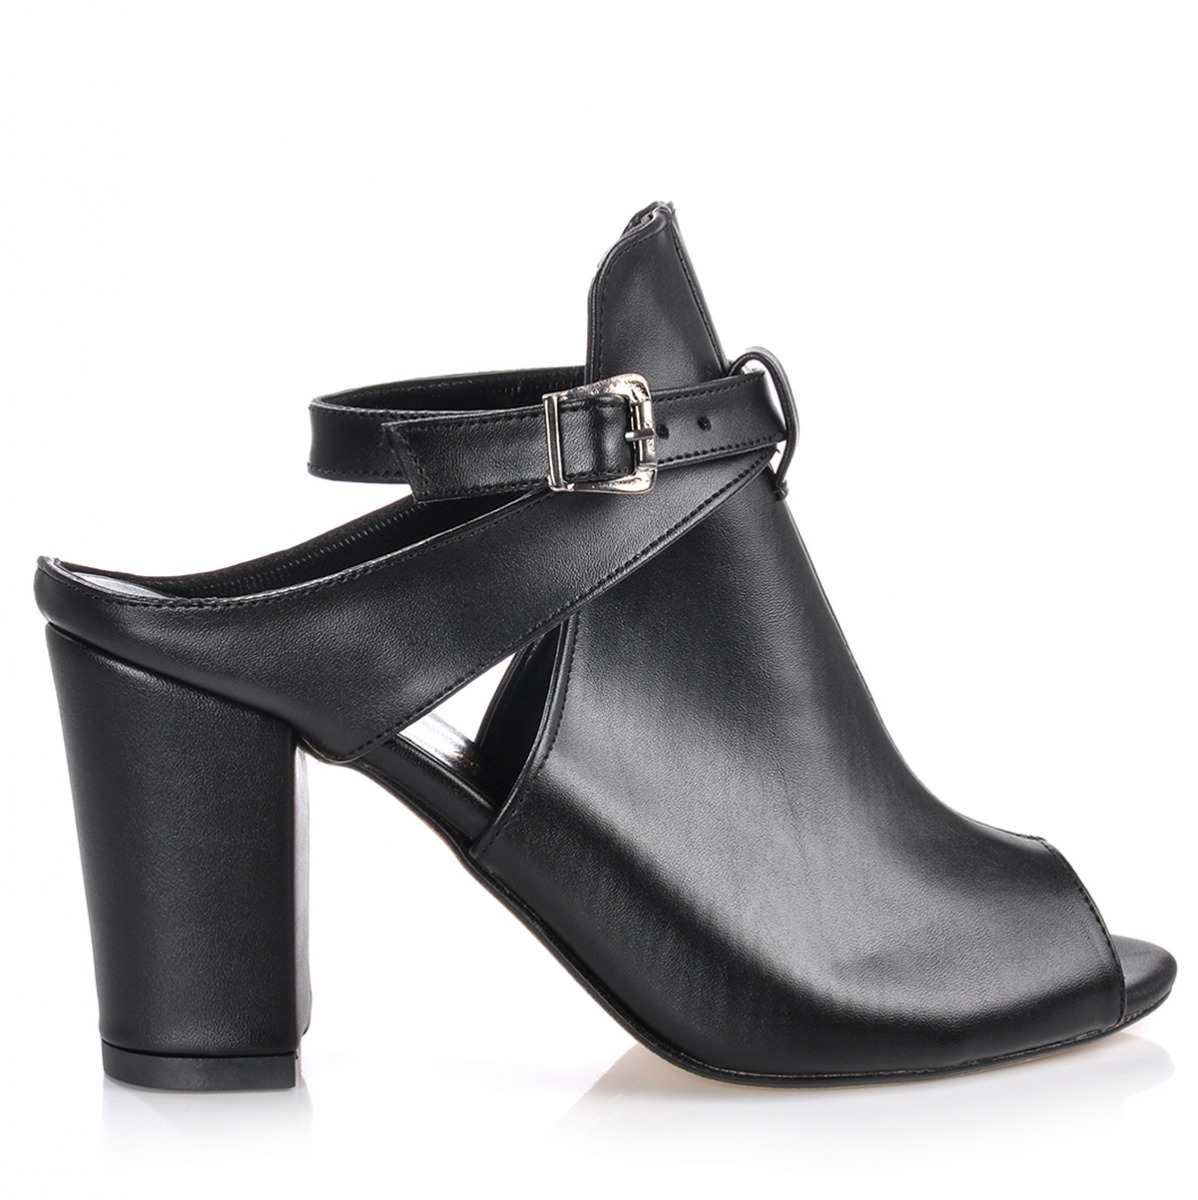 Flo Kadın  Siyah Klasik Topuklu Ayakkabı VZN-231Y. 1